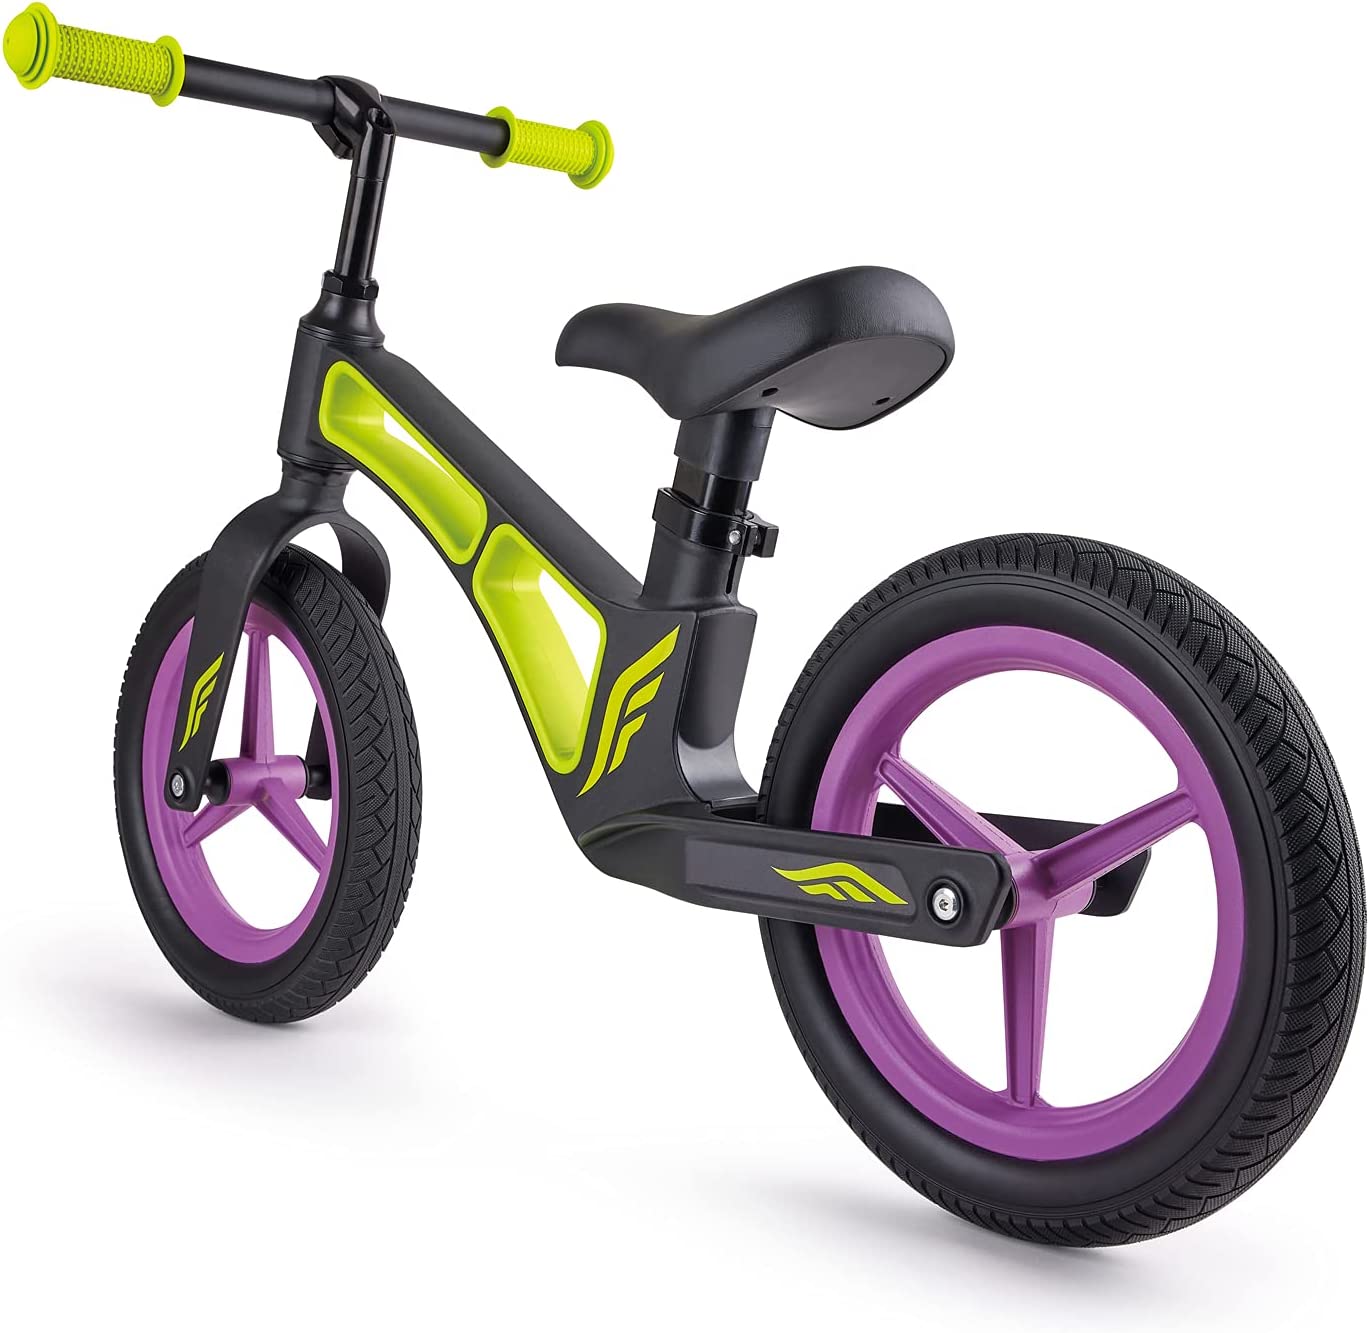 New Explorer Balance Bike - Green